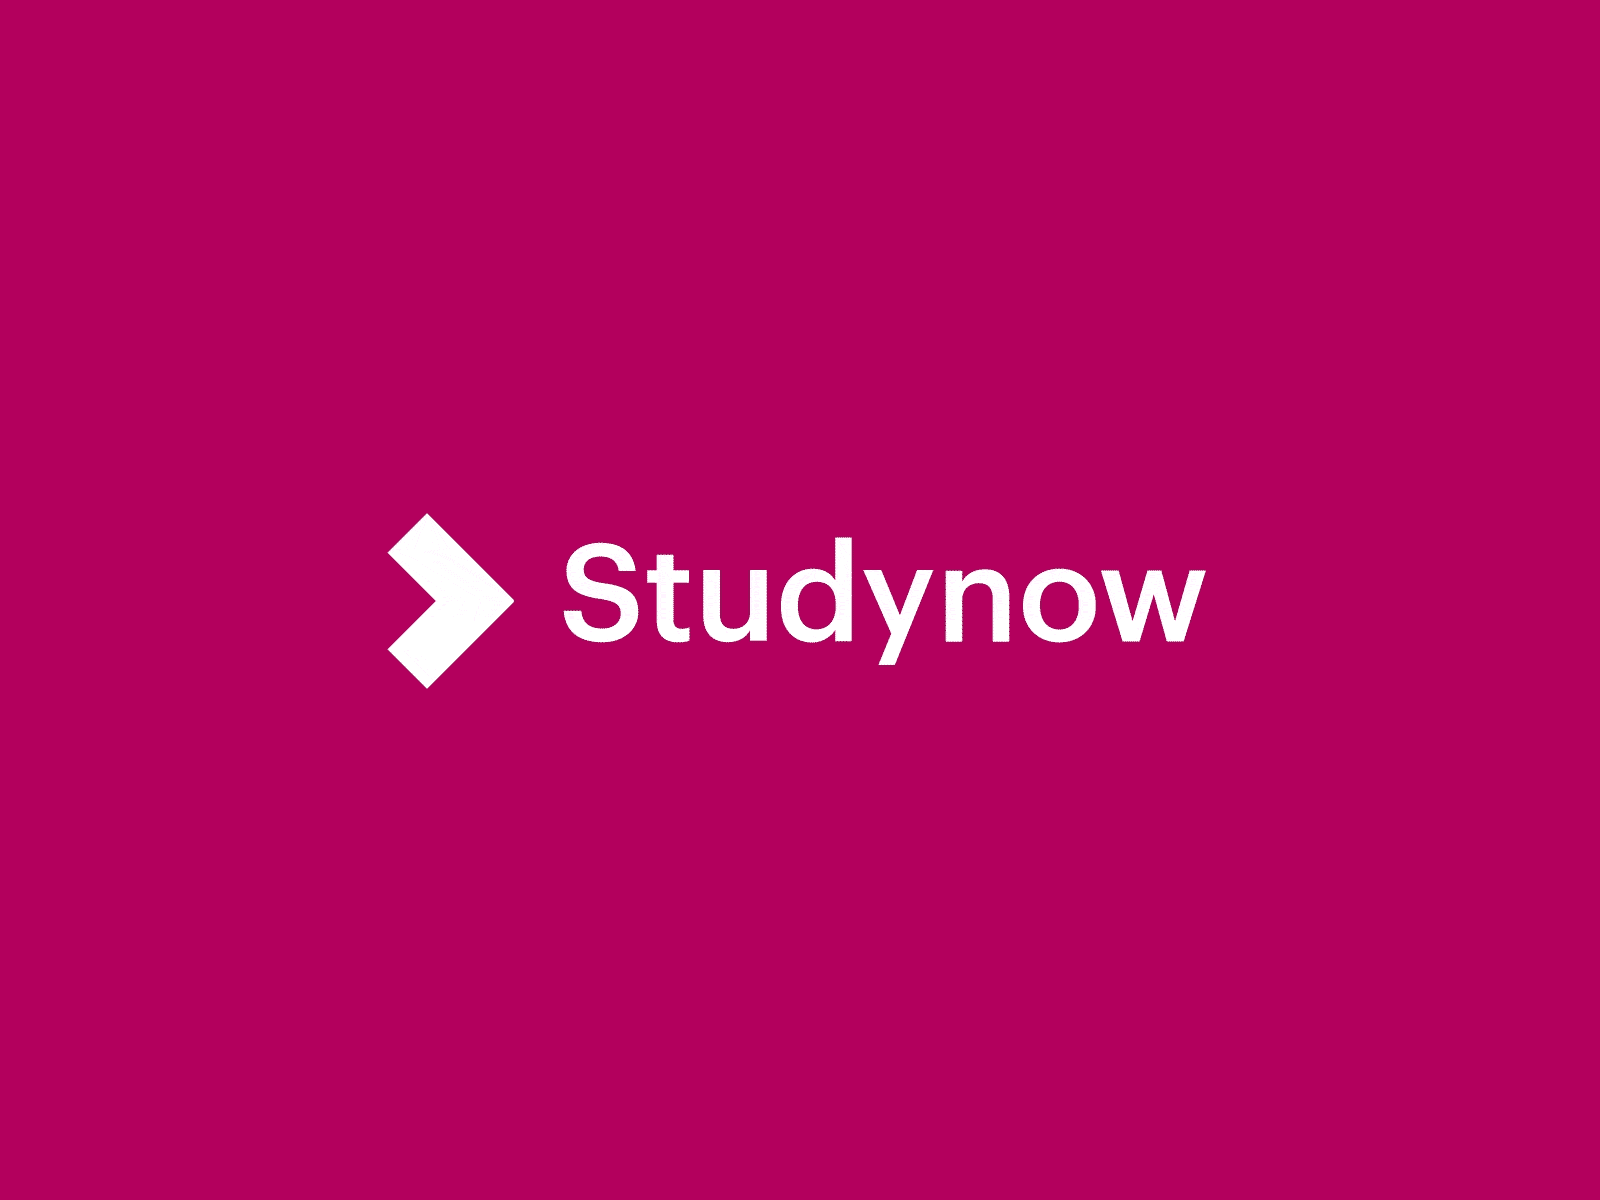 Studynow Logo Animation